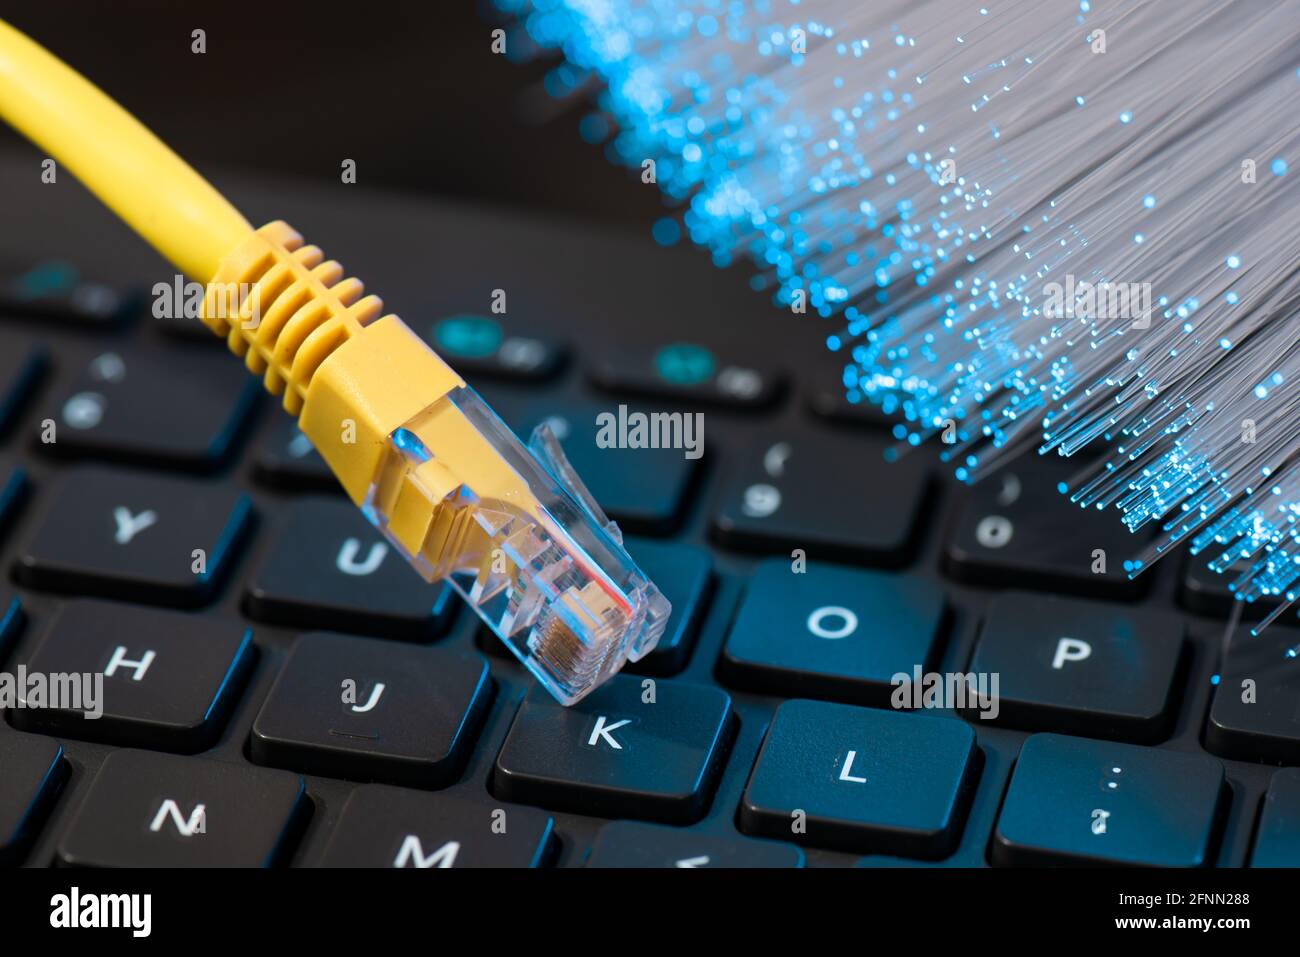 Câble Internet, prise RJ-45 sur le clavier de l'ordinateur portable. Concept Internet à fibre optique haut débit Banque D'Images